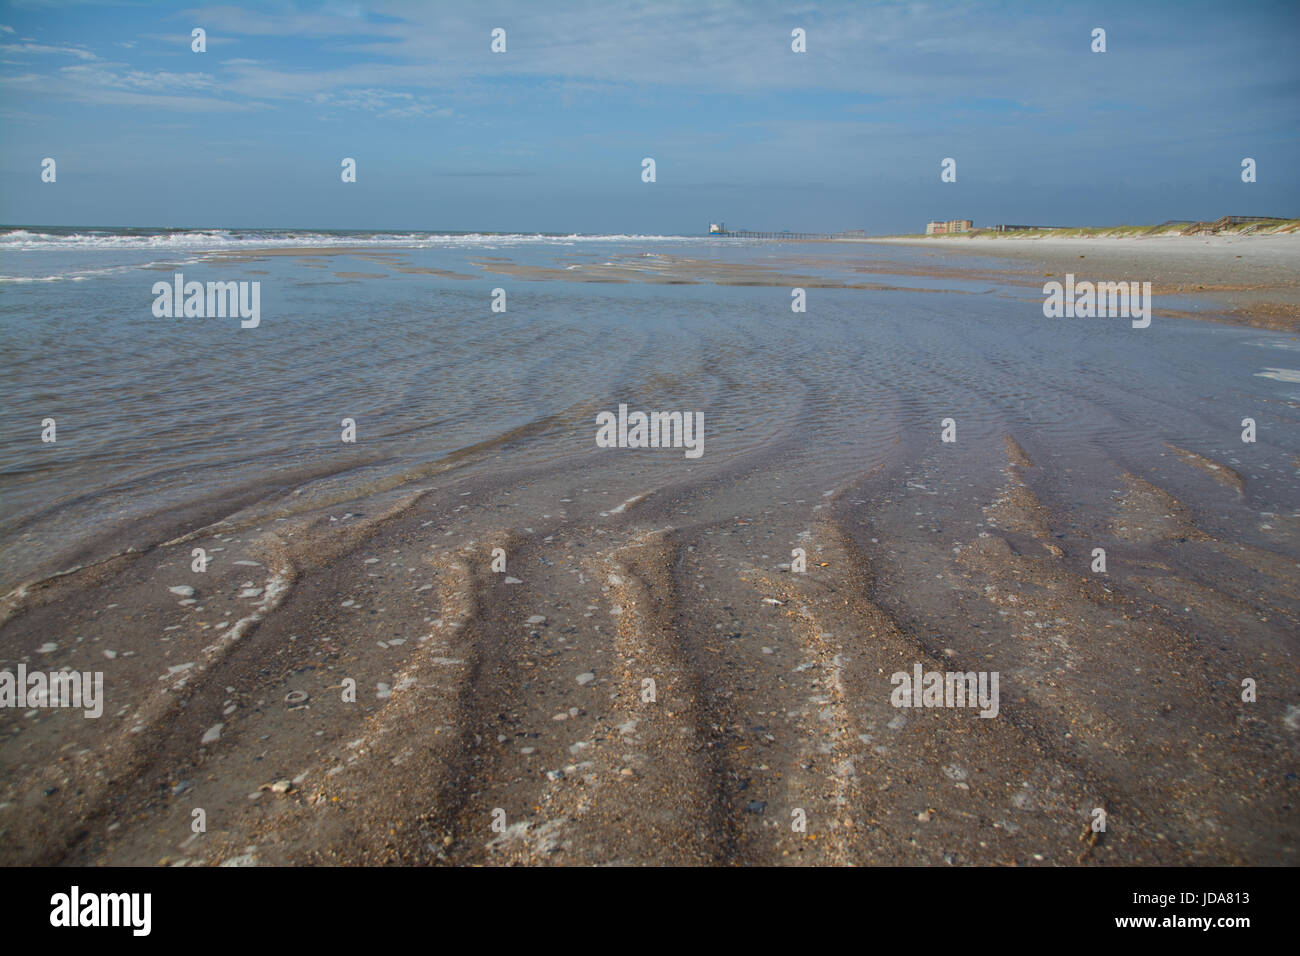 Amelia Island marée basse ; révélant les battures de sable ou sur le côté plage Amelia Island Fernandina Beach Banque D'Images